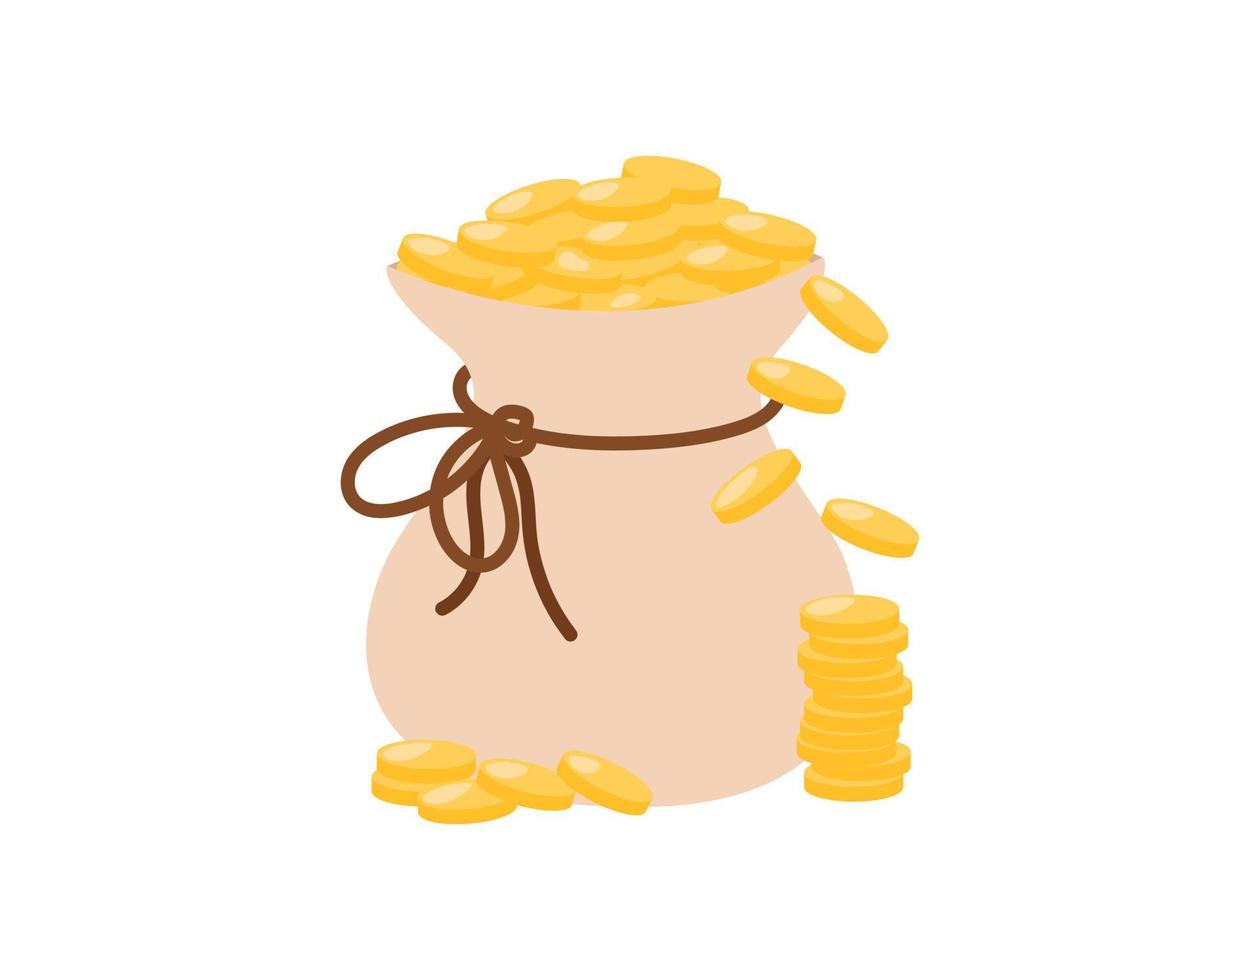 saco de dinheiro isolado. moedas de ouro caindo do saco transbordando com corda. ilustração em vetor plana. símbolo de riqueza e sucesso